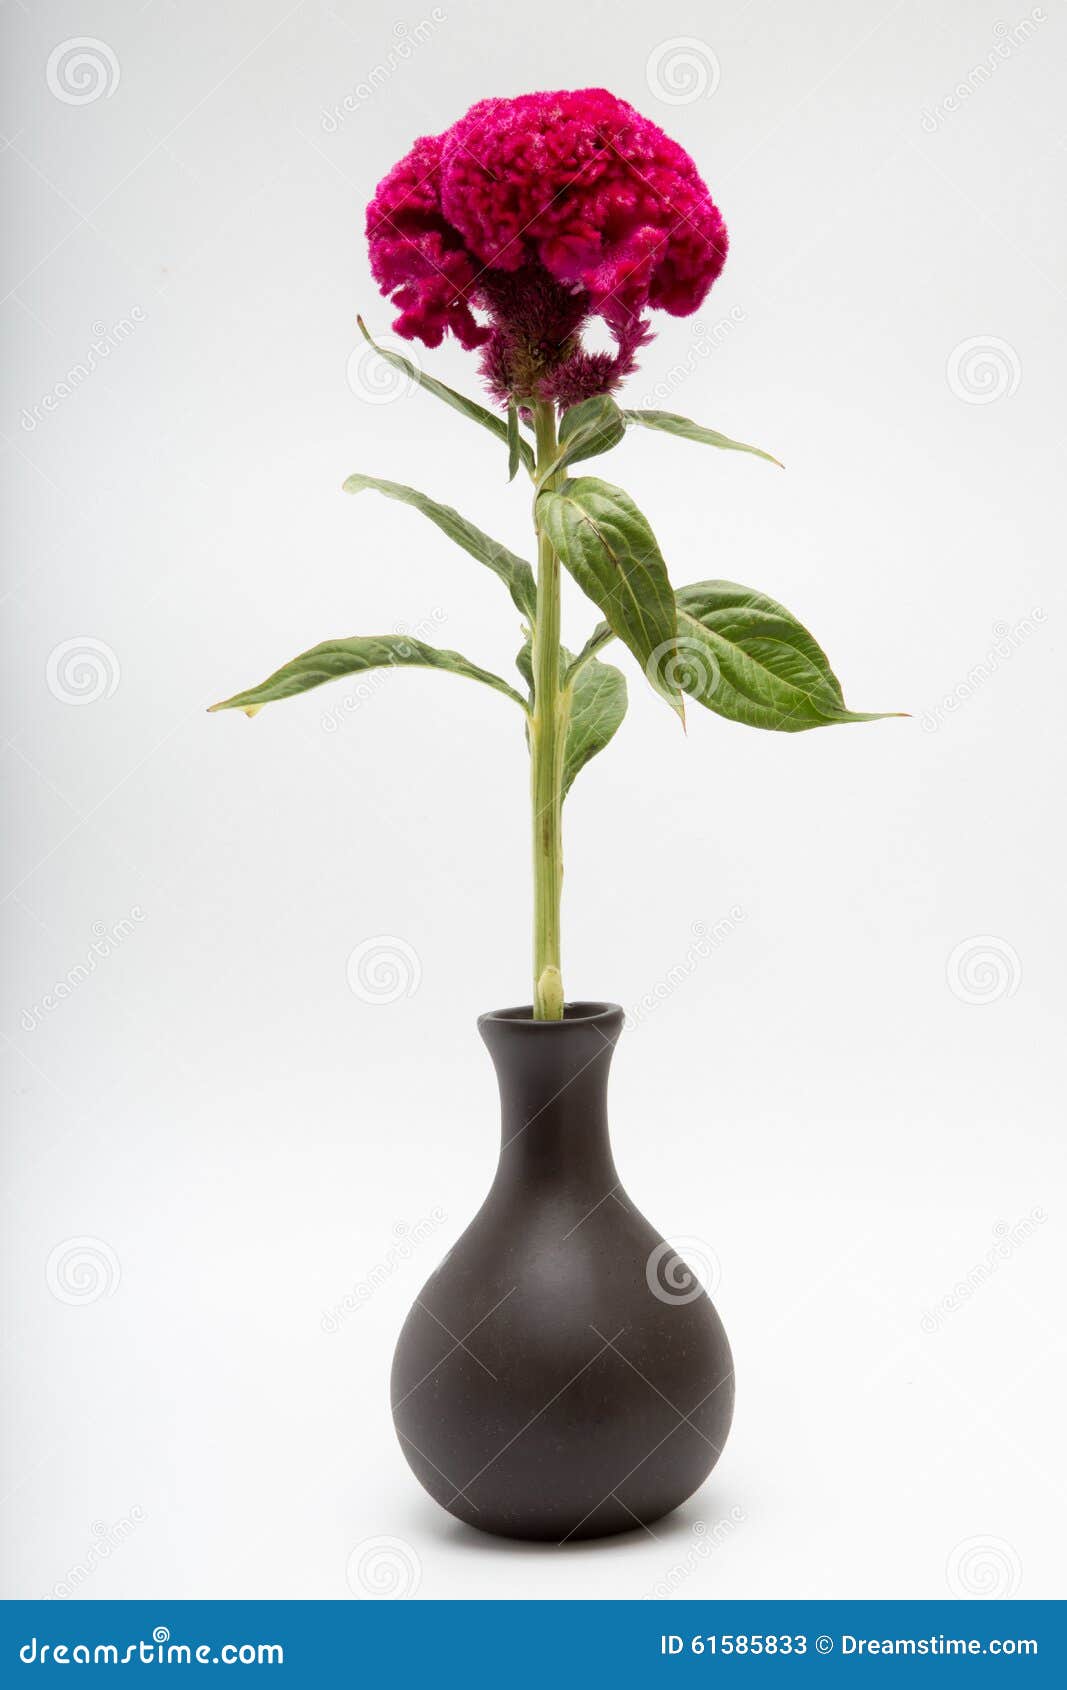 celosia cristata known as cockscomb or terciopelo in vase